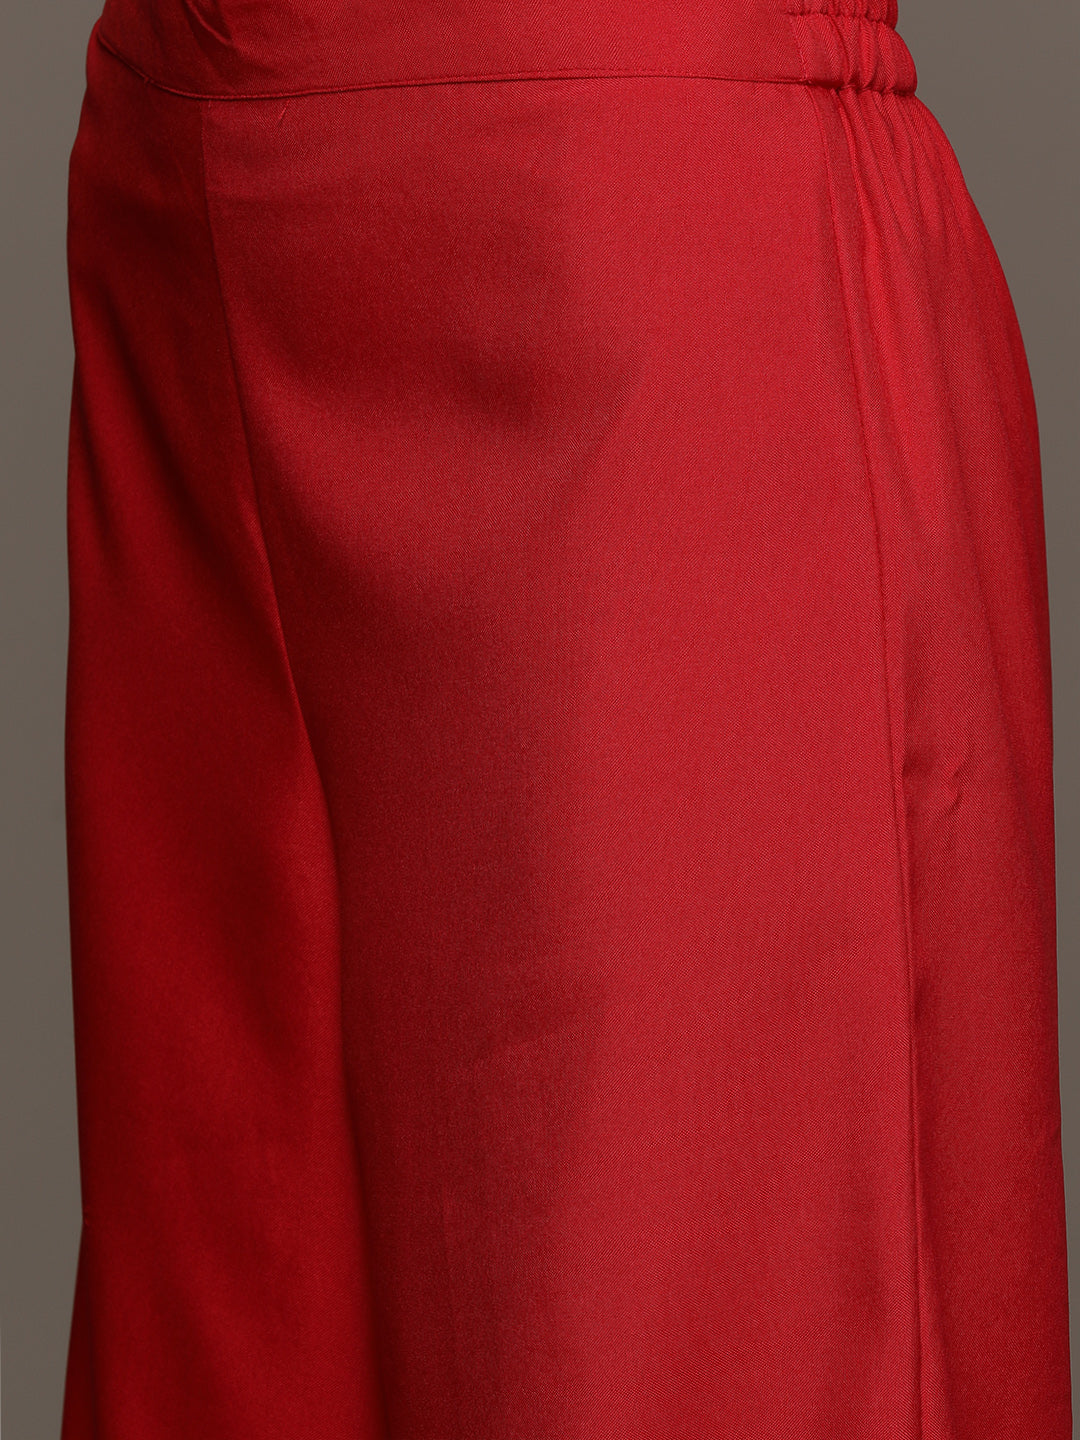 Women's Red Rayon Kurta, Palazzo And Dupatta Set - Ziyaa